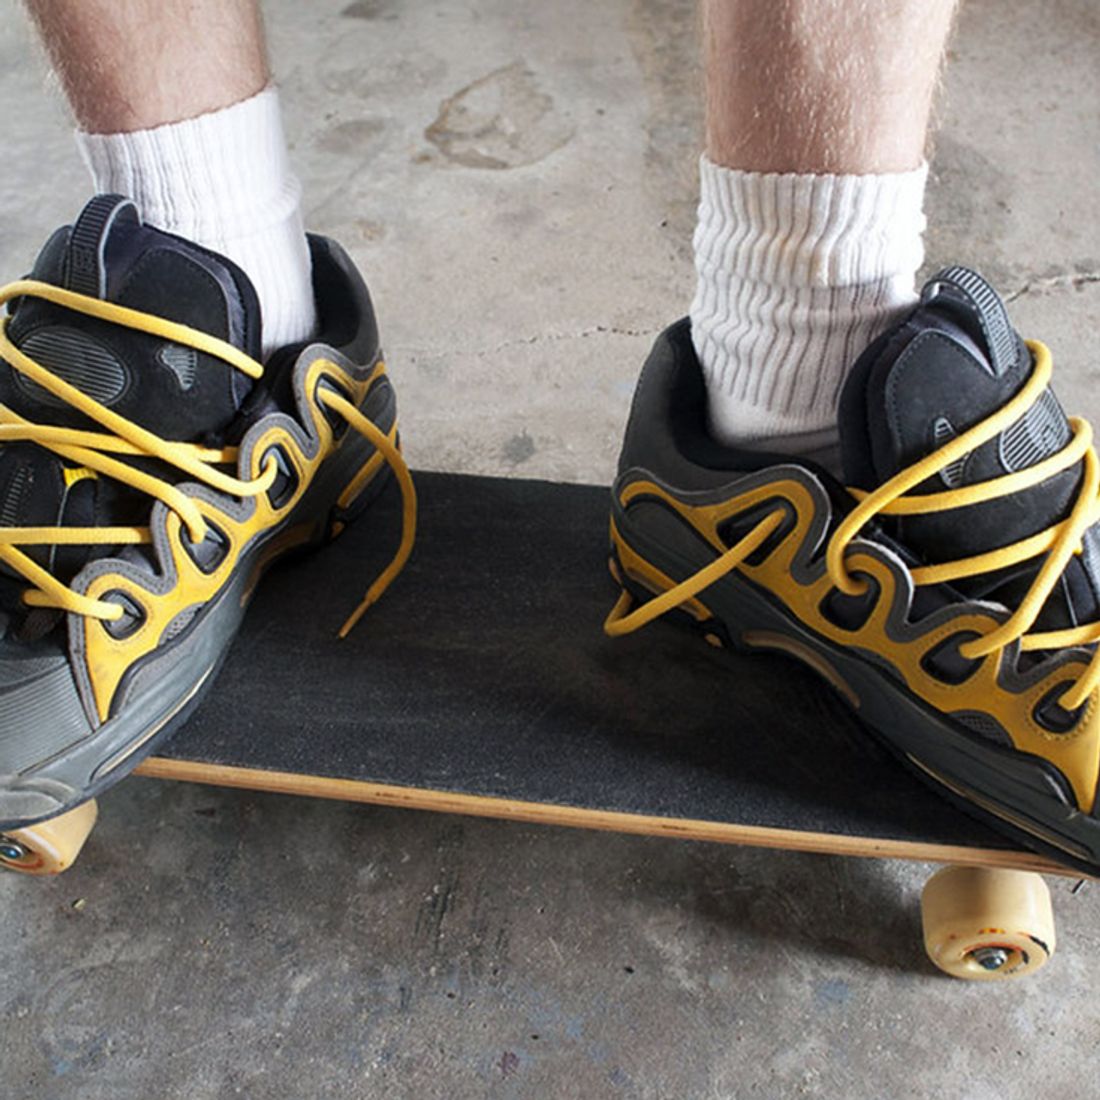 5 Sneakers That Defined Early-2000s Skateboarding - Sneaker Freaker